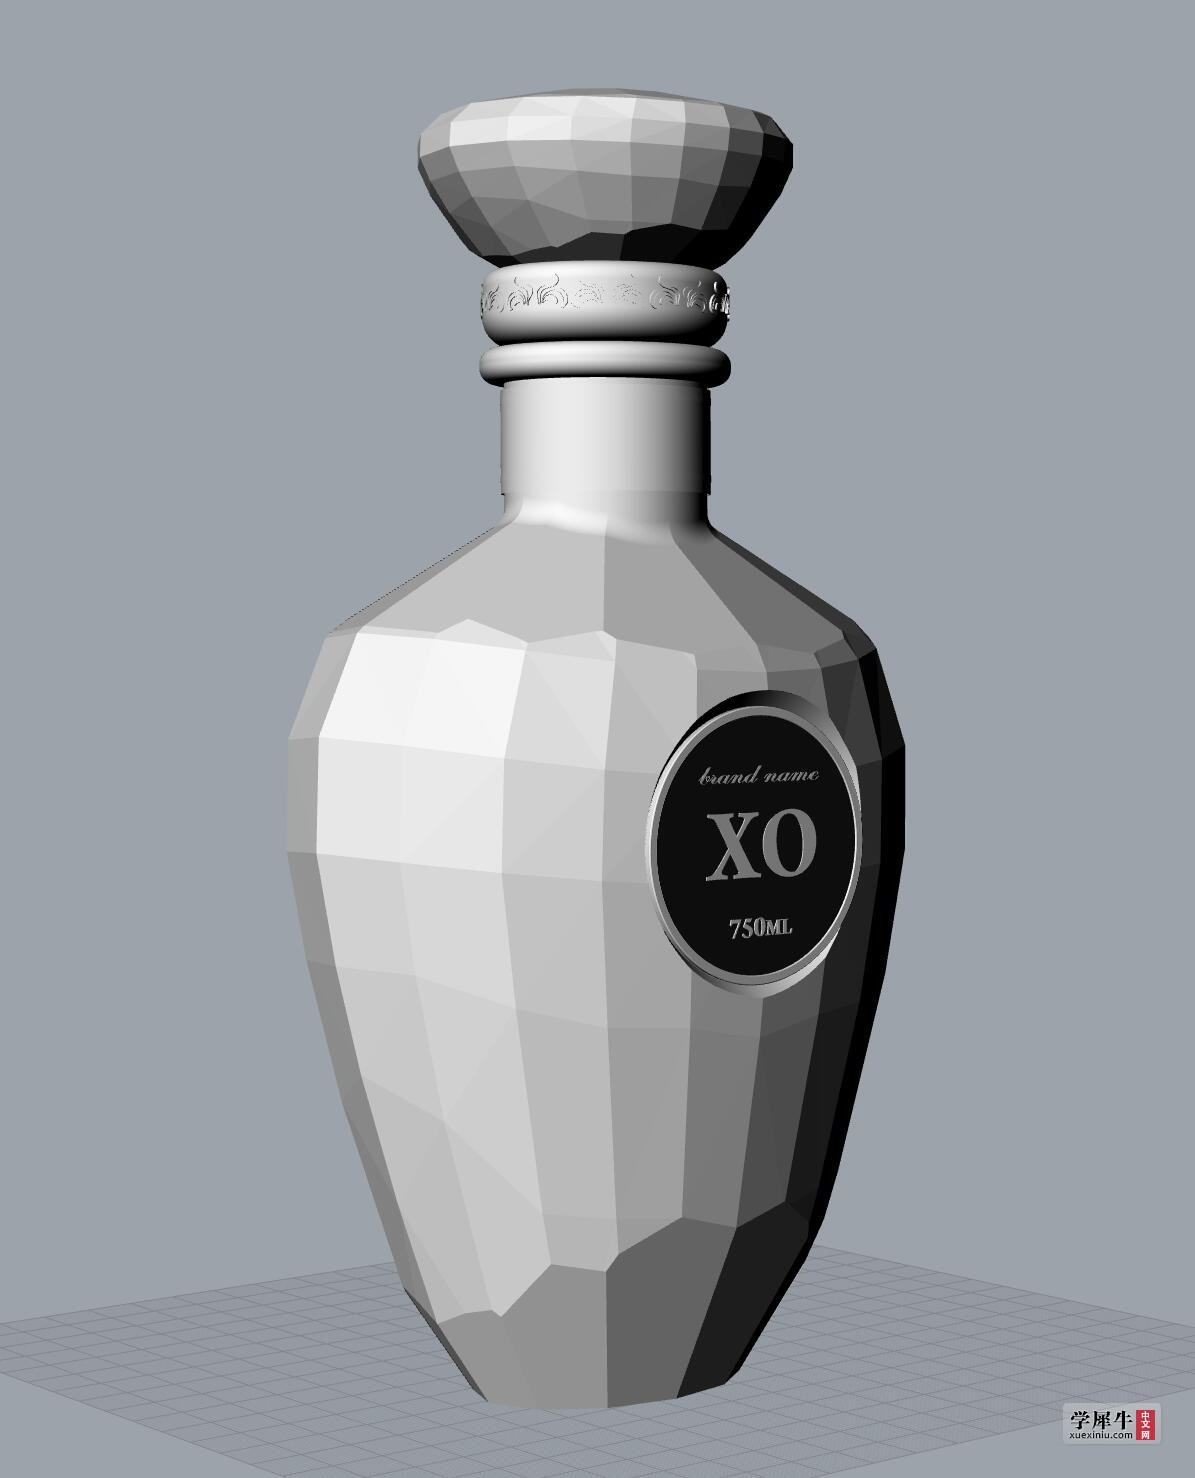 xo原创酒瓶设计